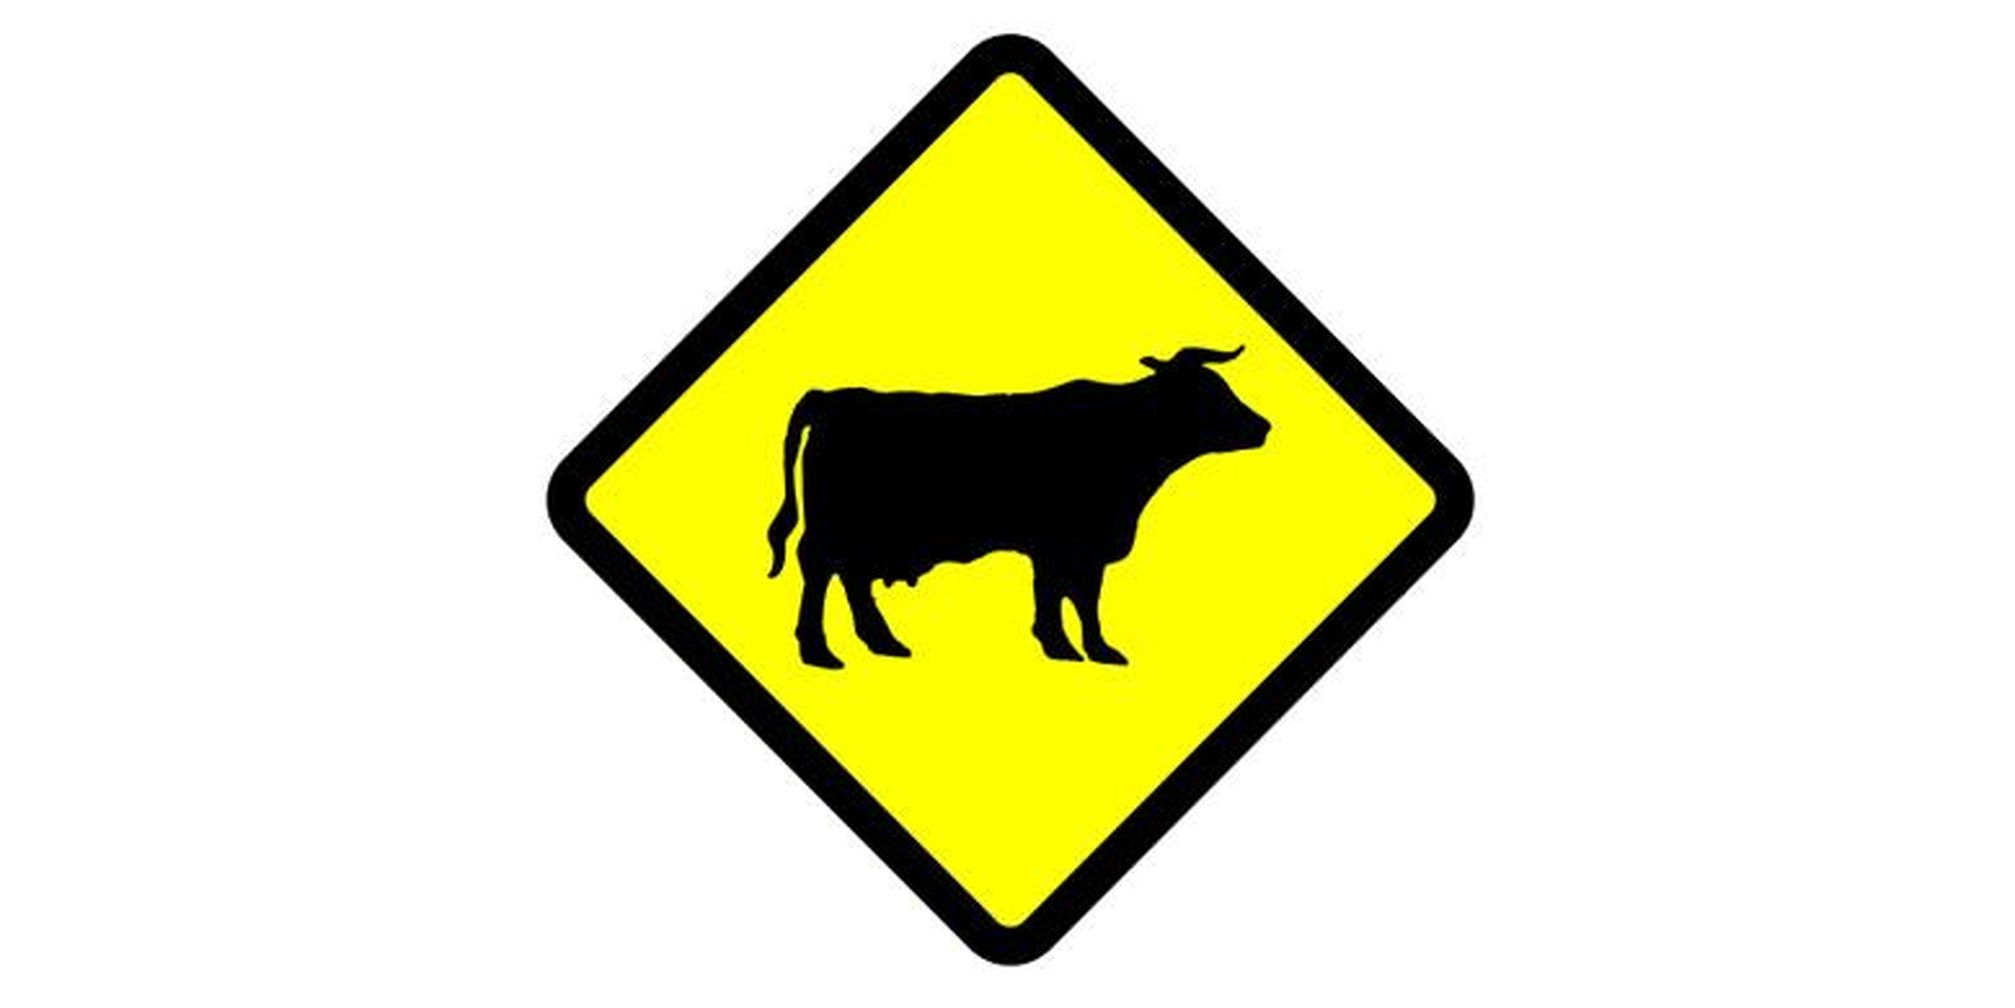 rambu peringatan pengguna jalan bahwa ada potensi hewan ternak melintas.